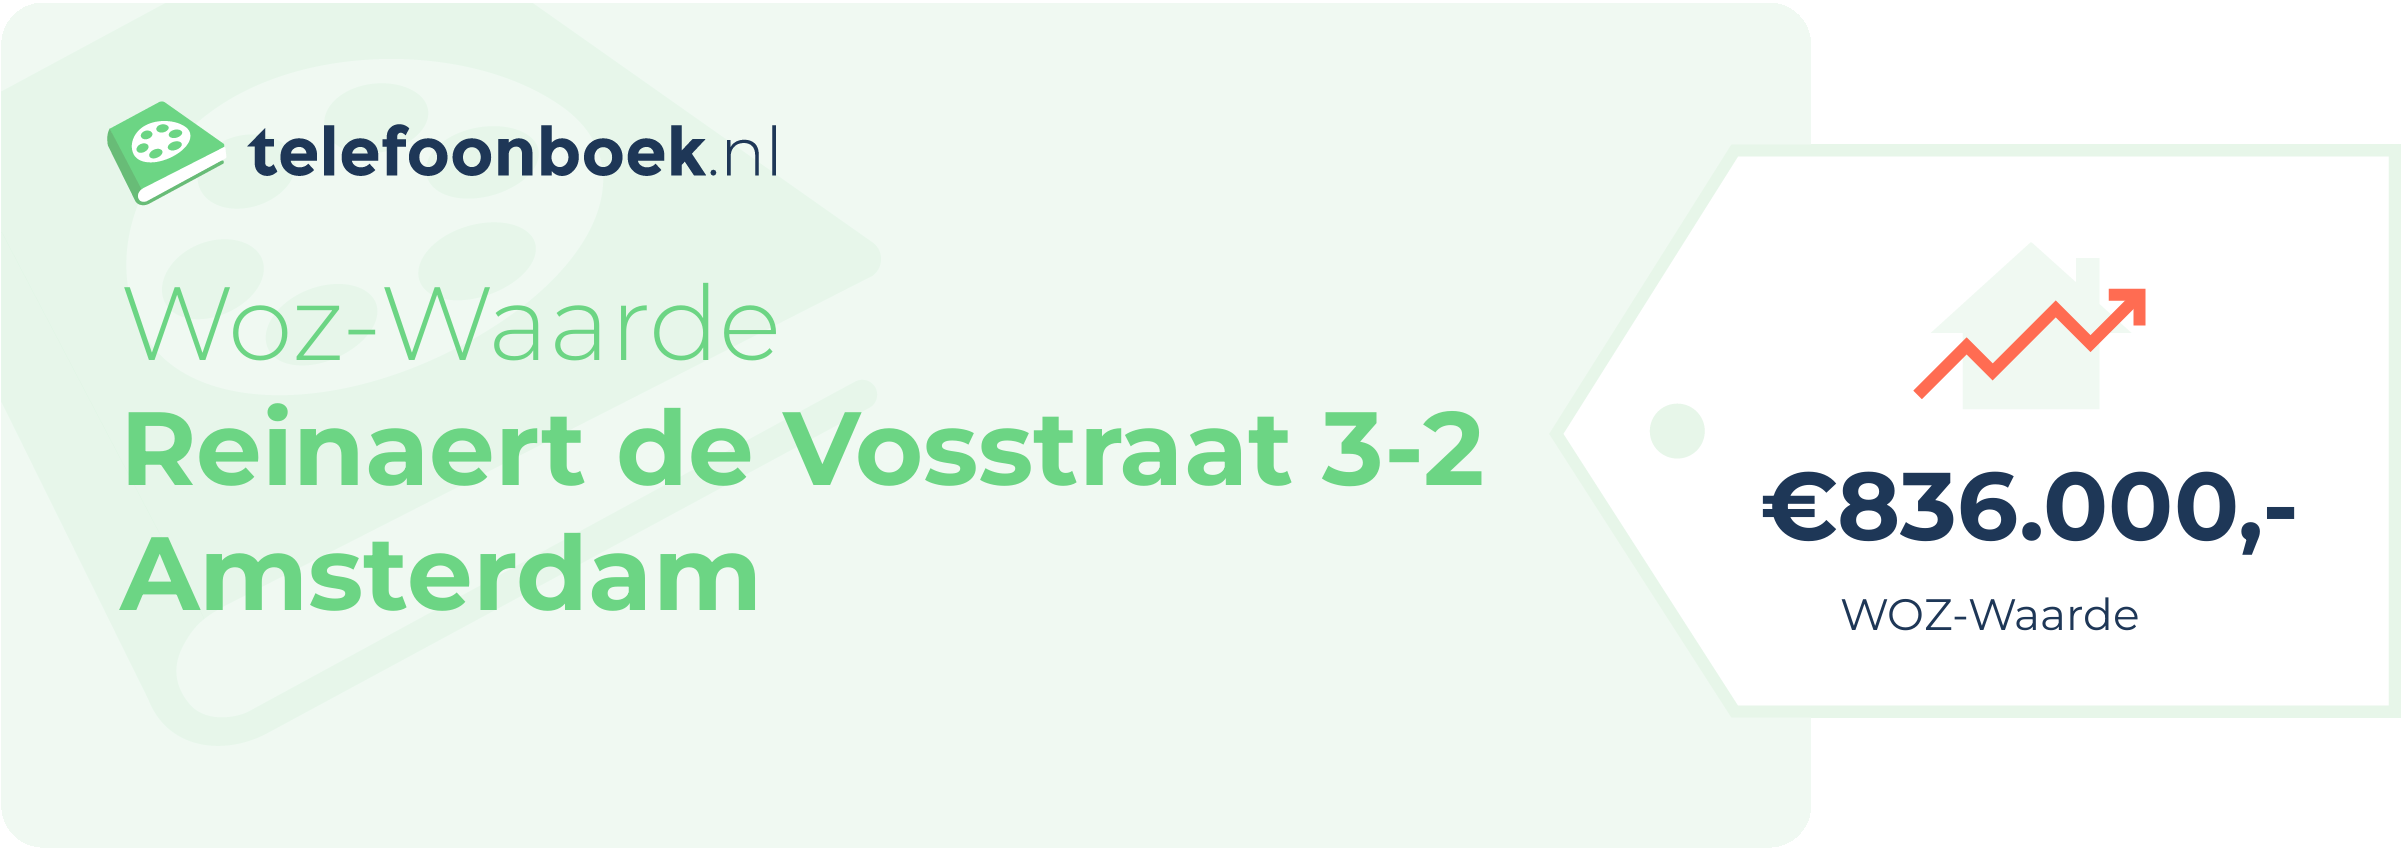 WOZ-waarde Reinaert De Vosstraat 3-2 Amsterdam